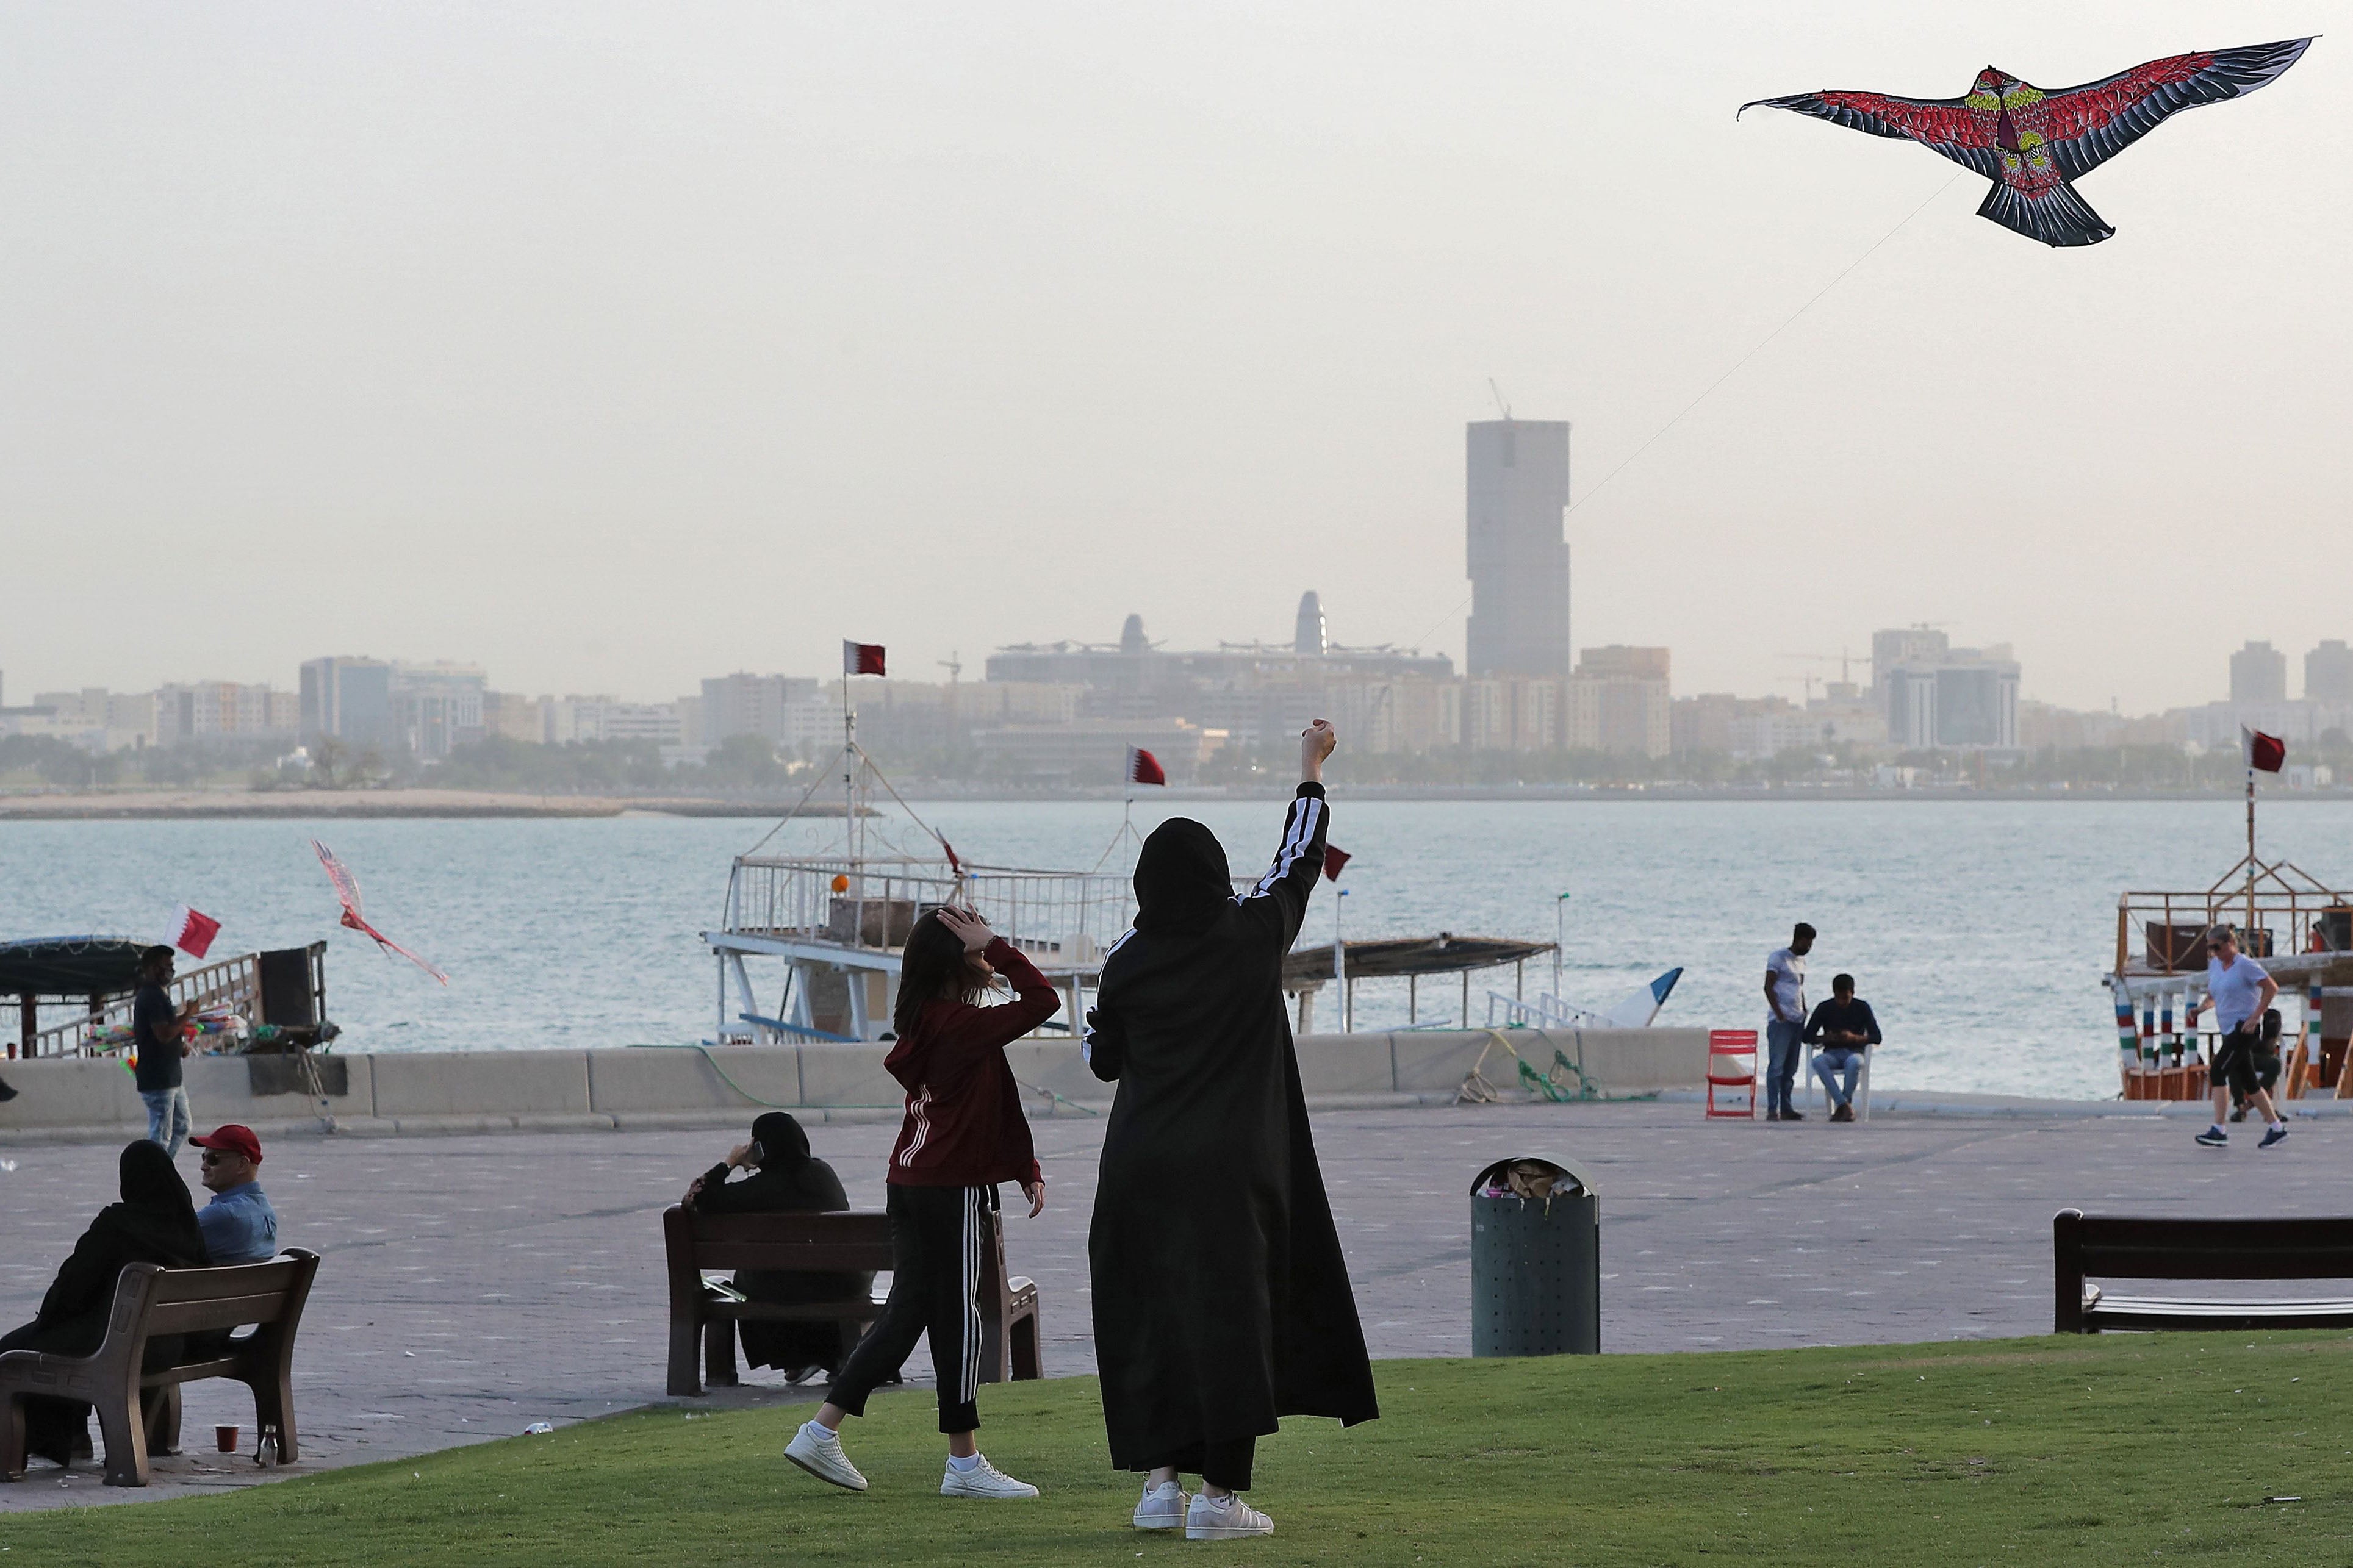 Une femme et une jeune fille jouent au cerf-volant sur la Corniche, une promenade longeant le golfe Persique dans la baie de Doha, la capitale du Qatar, le 16 mars 2020.